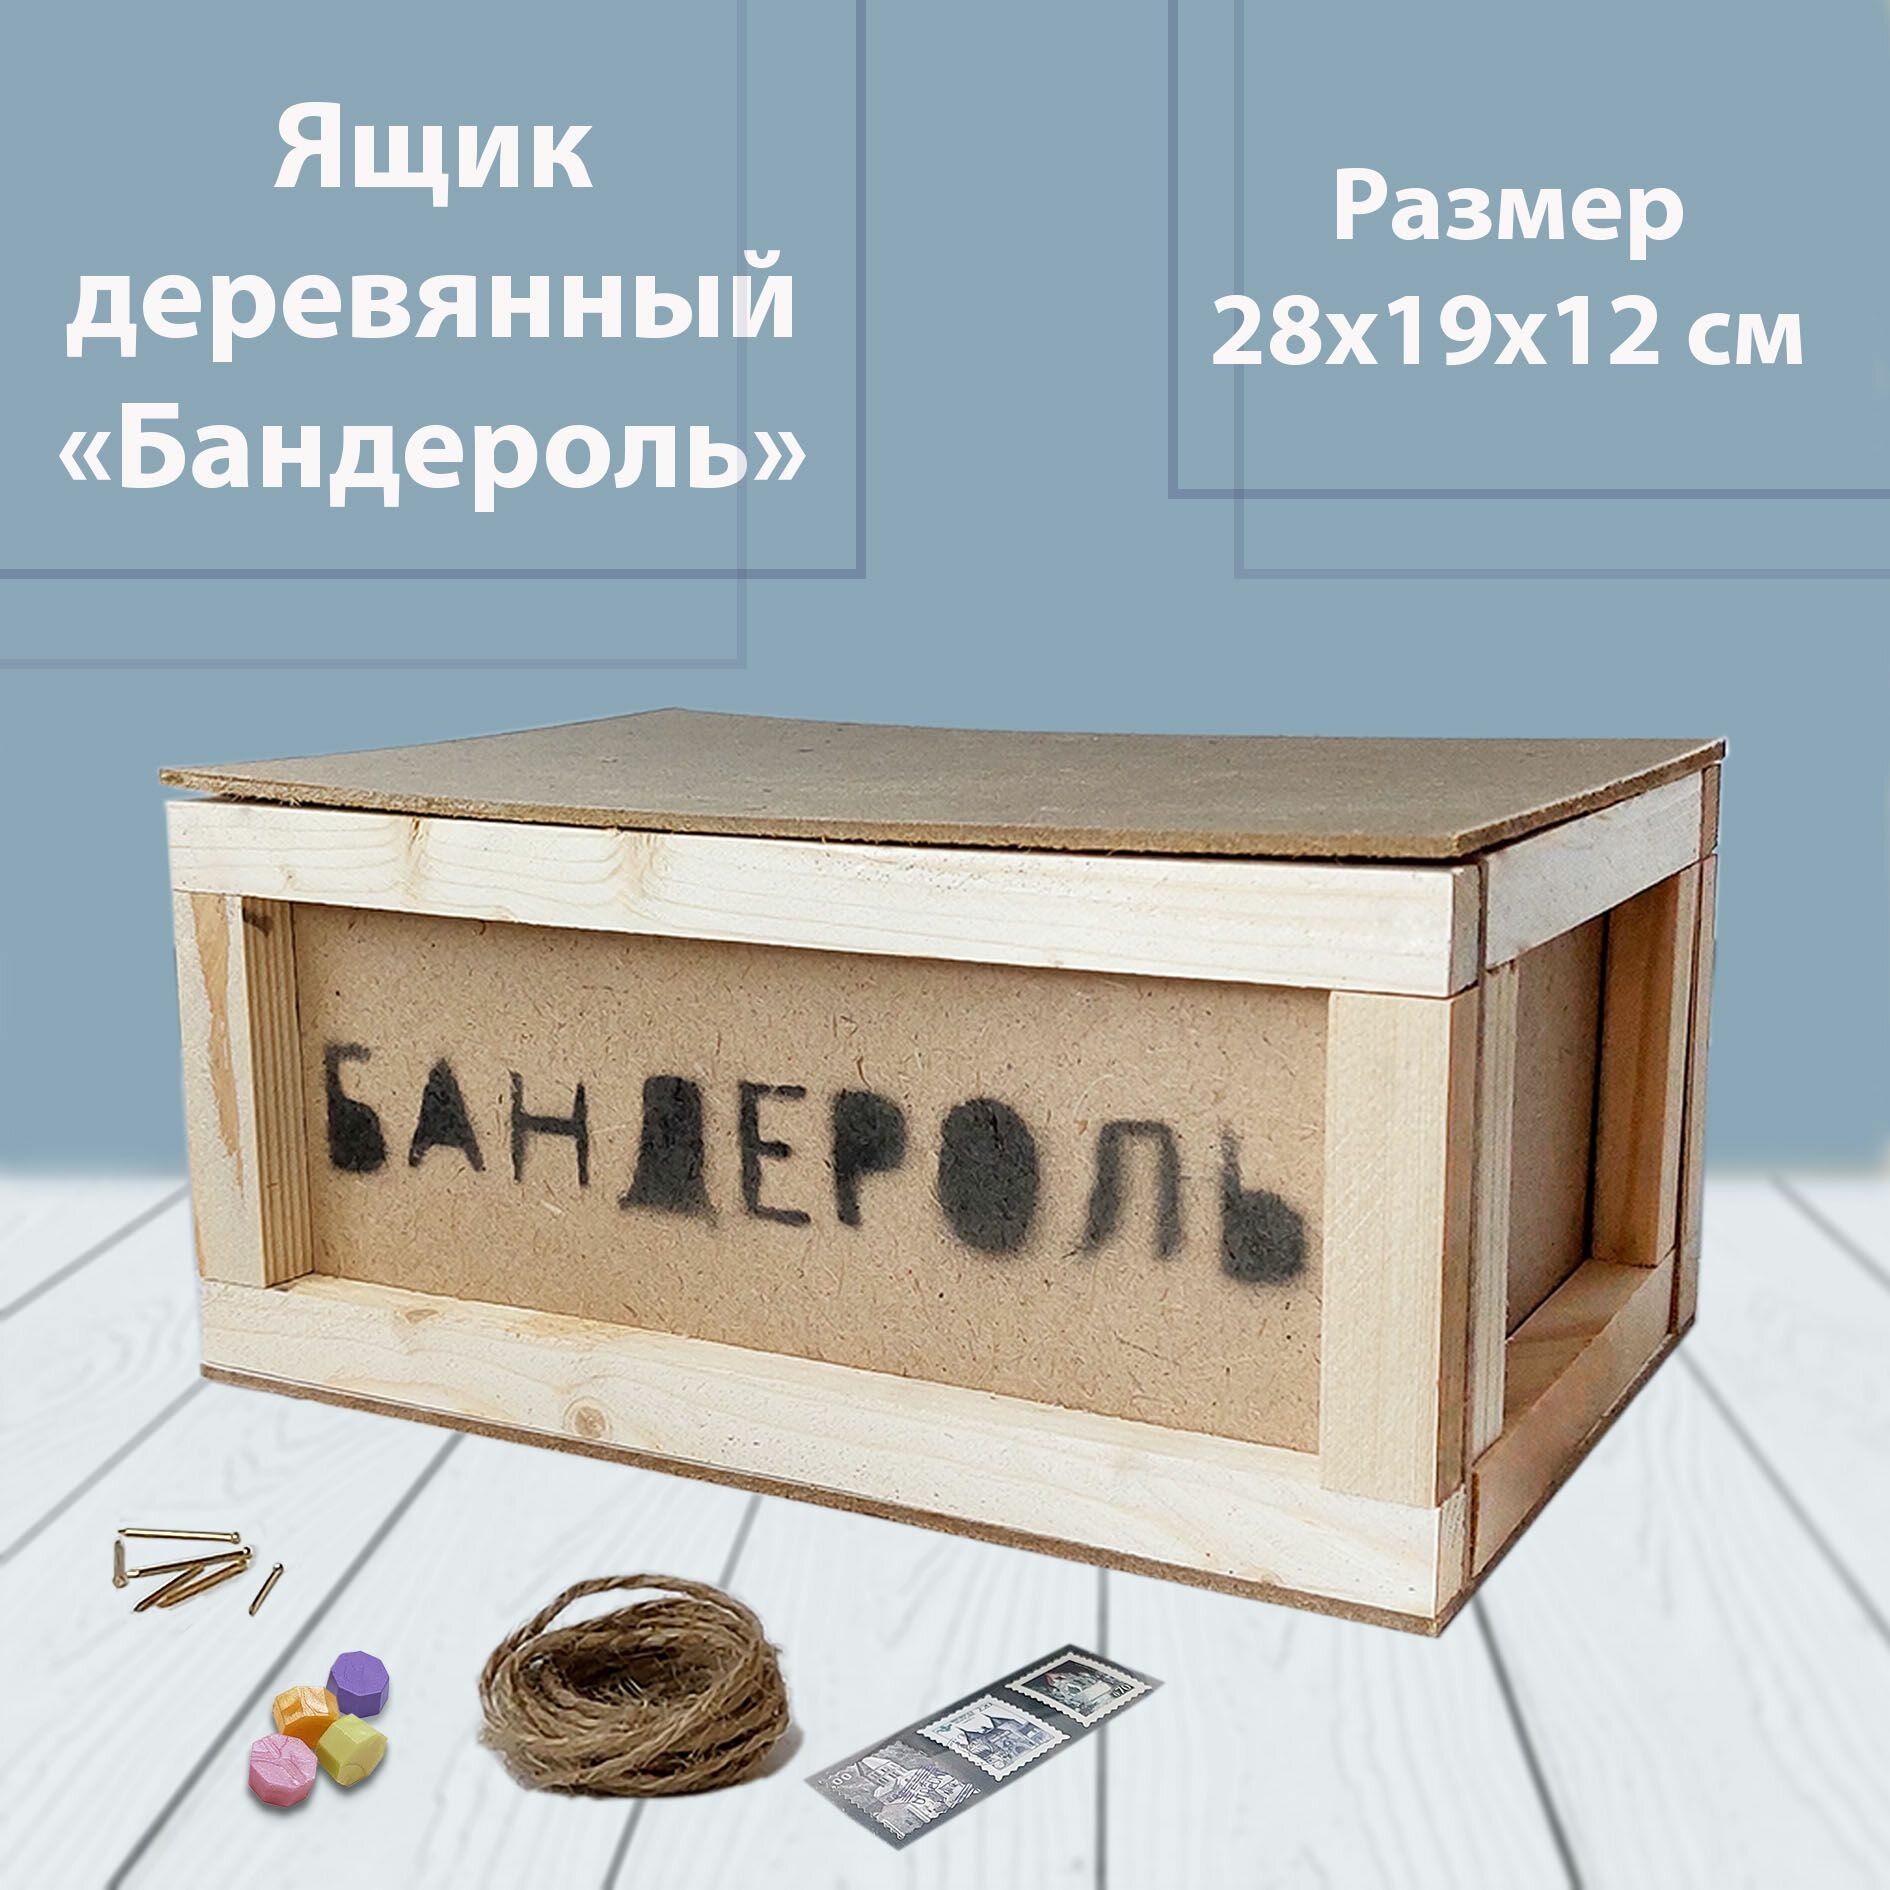 Ящик деревянный для подарка "Бандероль"